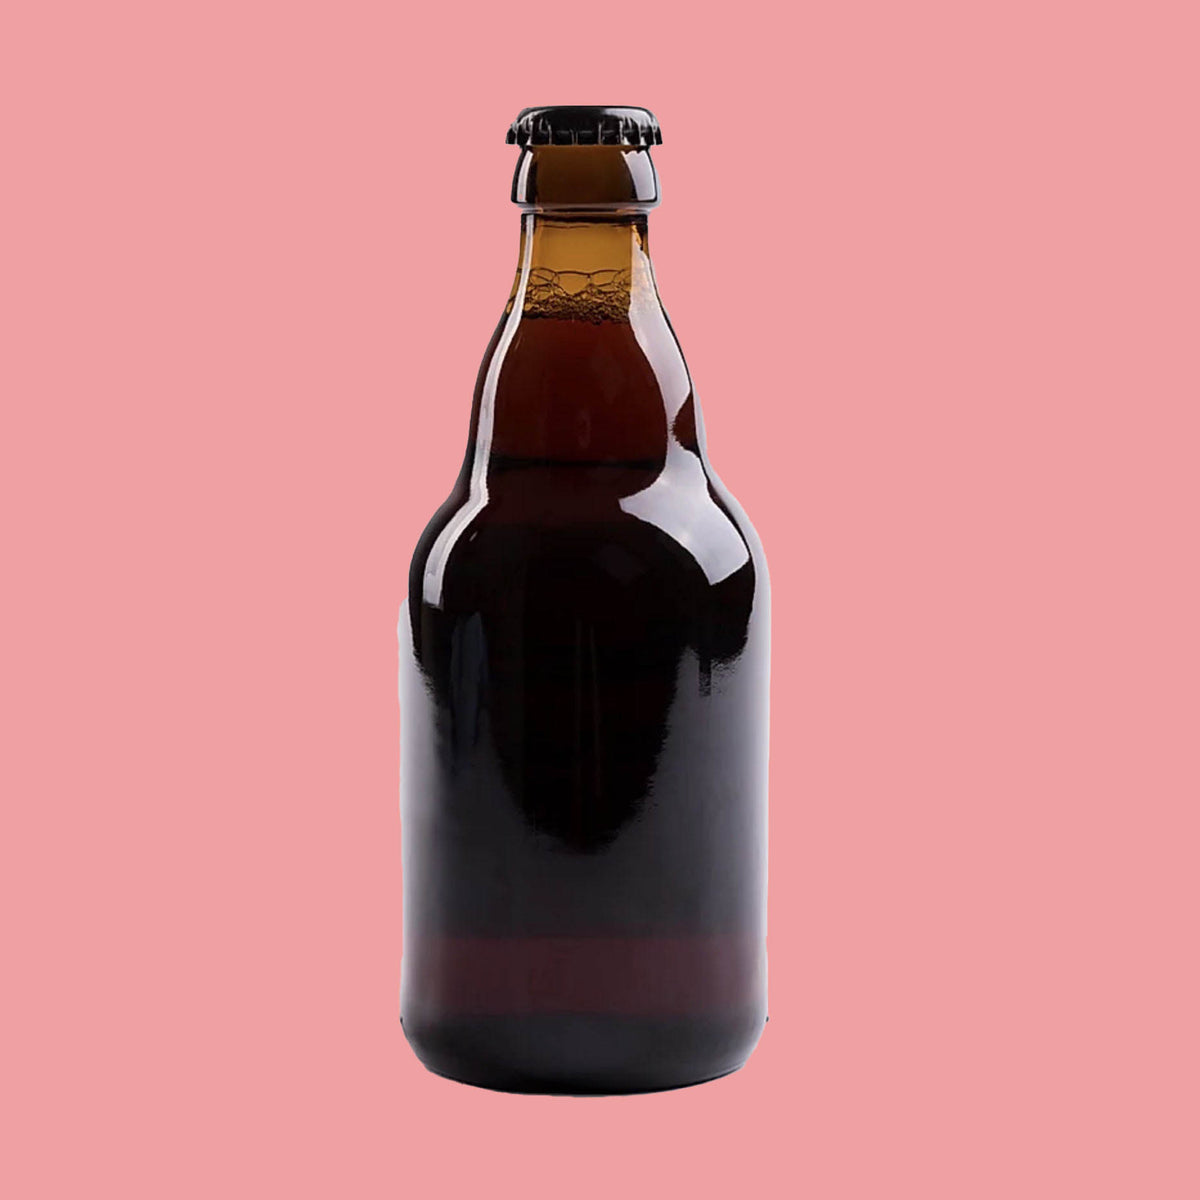 Emmett Amber Beer Bottle - 330ml